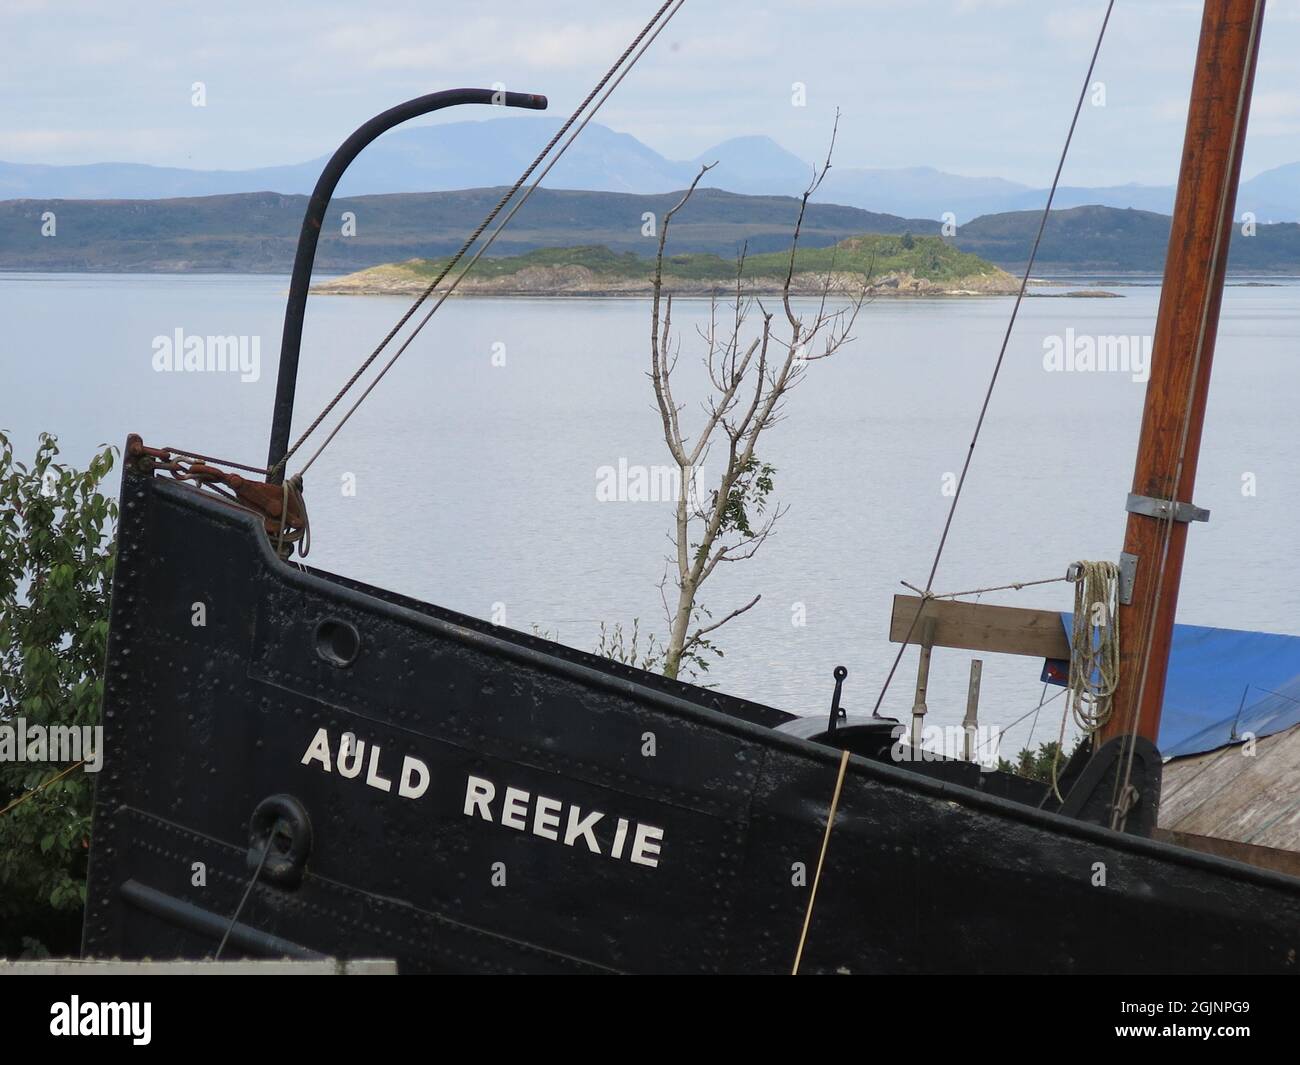 Vista di Auld Reekie, VIC 27, sullo scivolo del cantiere Crinan Boatyard, dove è stata restaurata al suo antico splendore come una spolietta a vapore Clyde lunga 66 piedi. Foto Stock